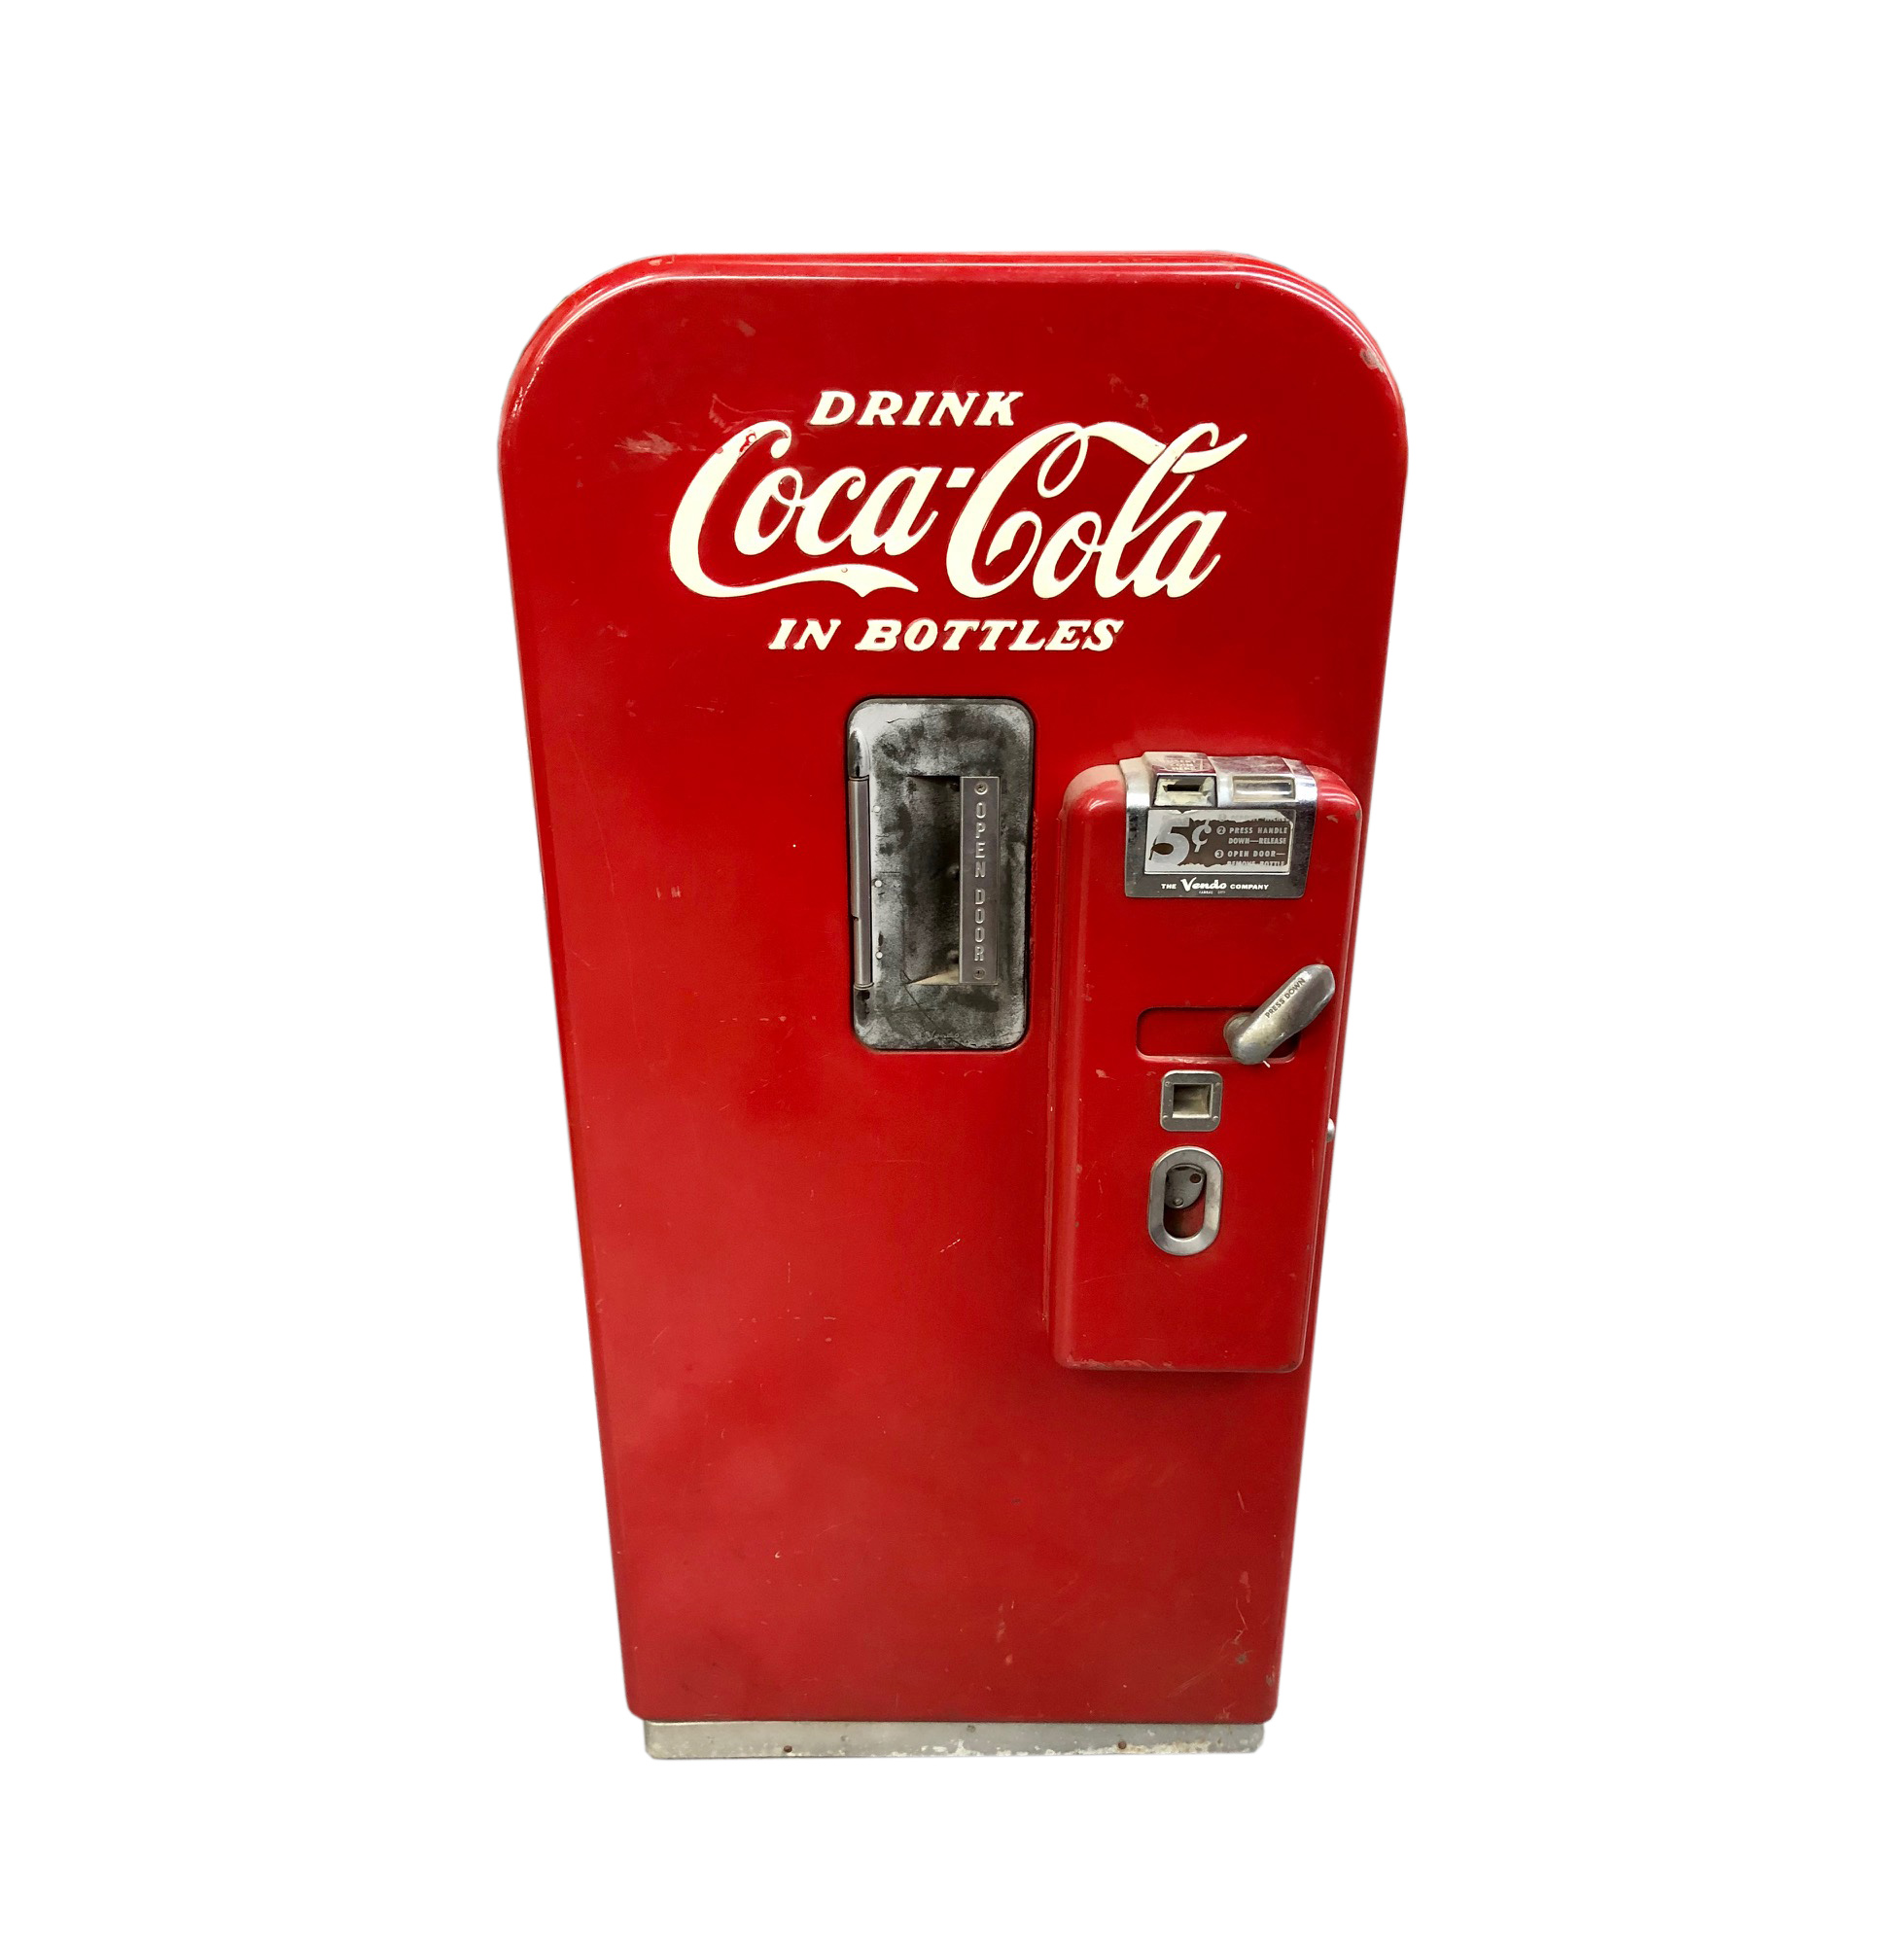 coca cola machine